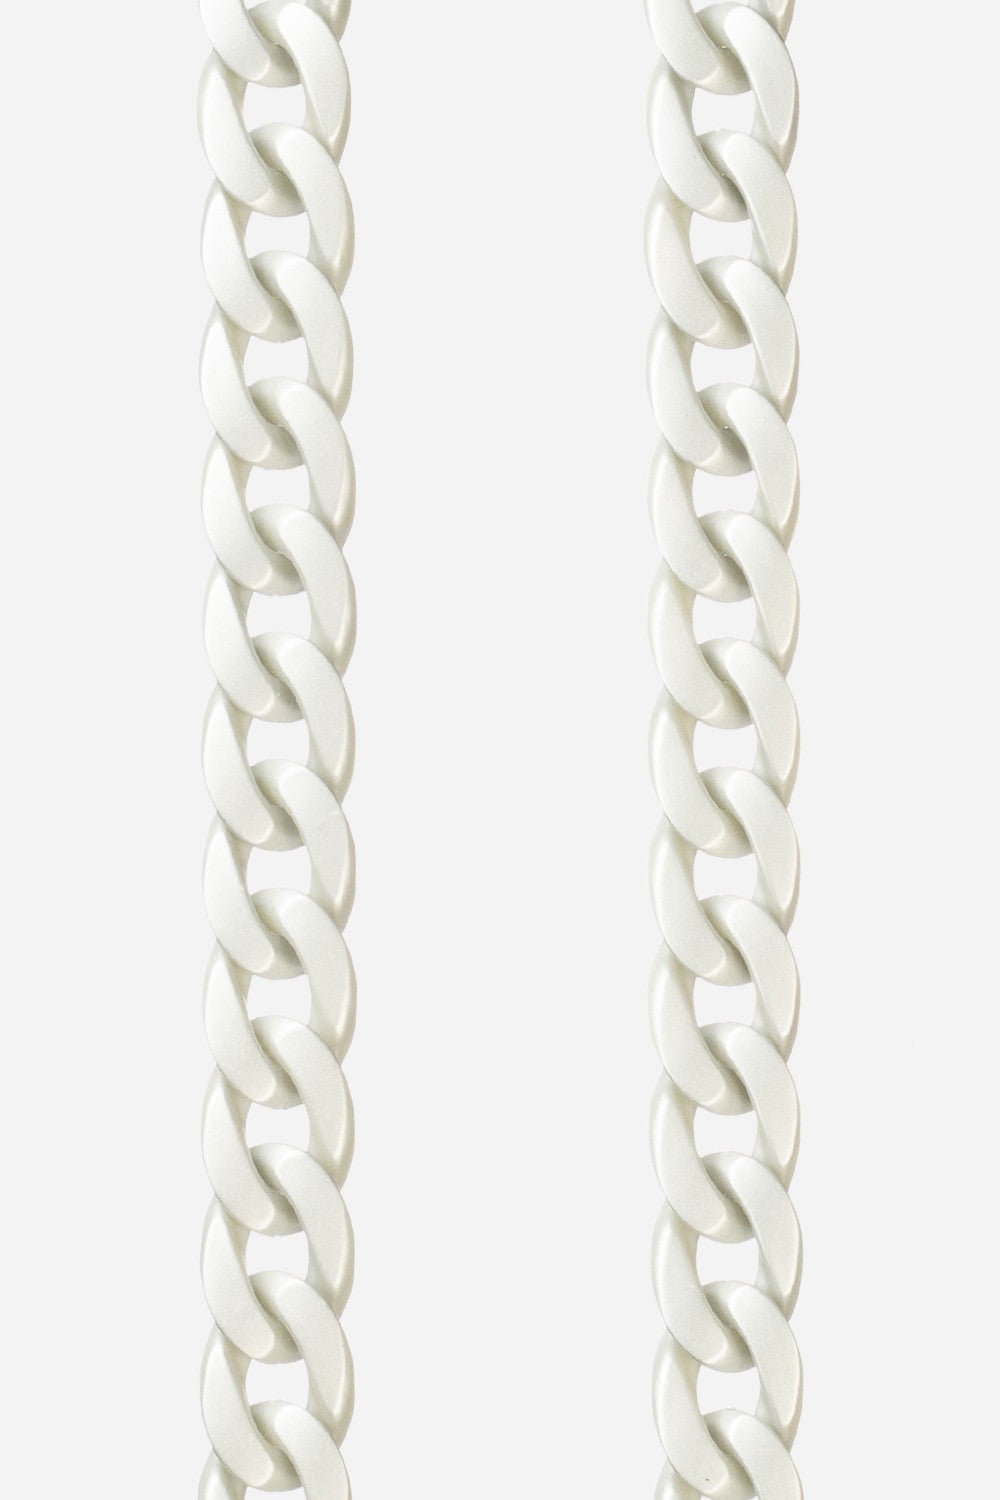 Long Sarah Silver Chain 120 cm